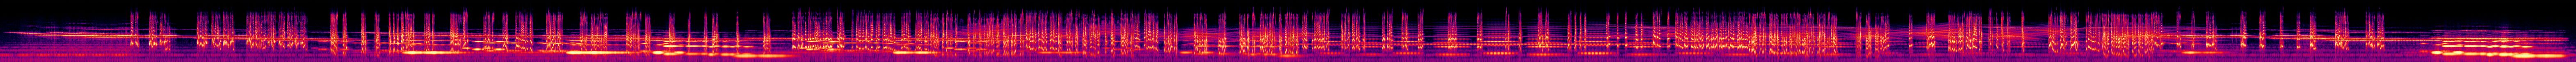 The Afterlife - 2 - Spectrogram.jpg